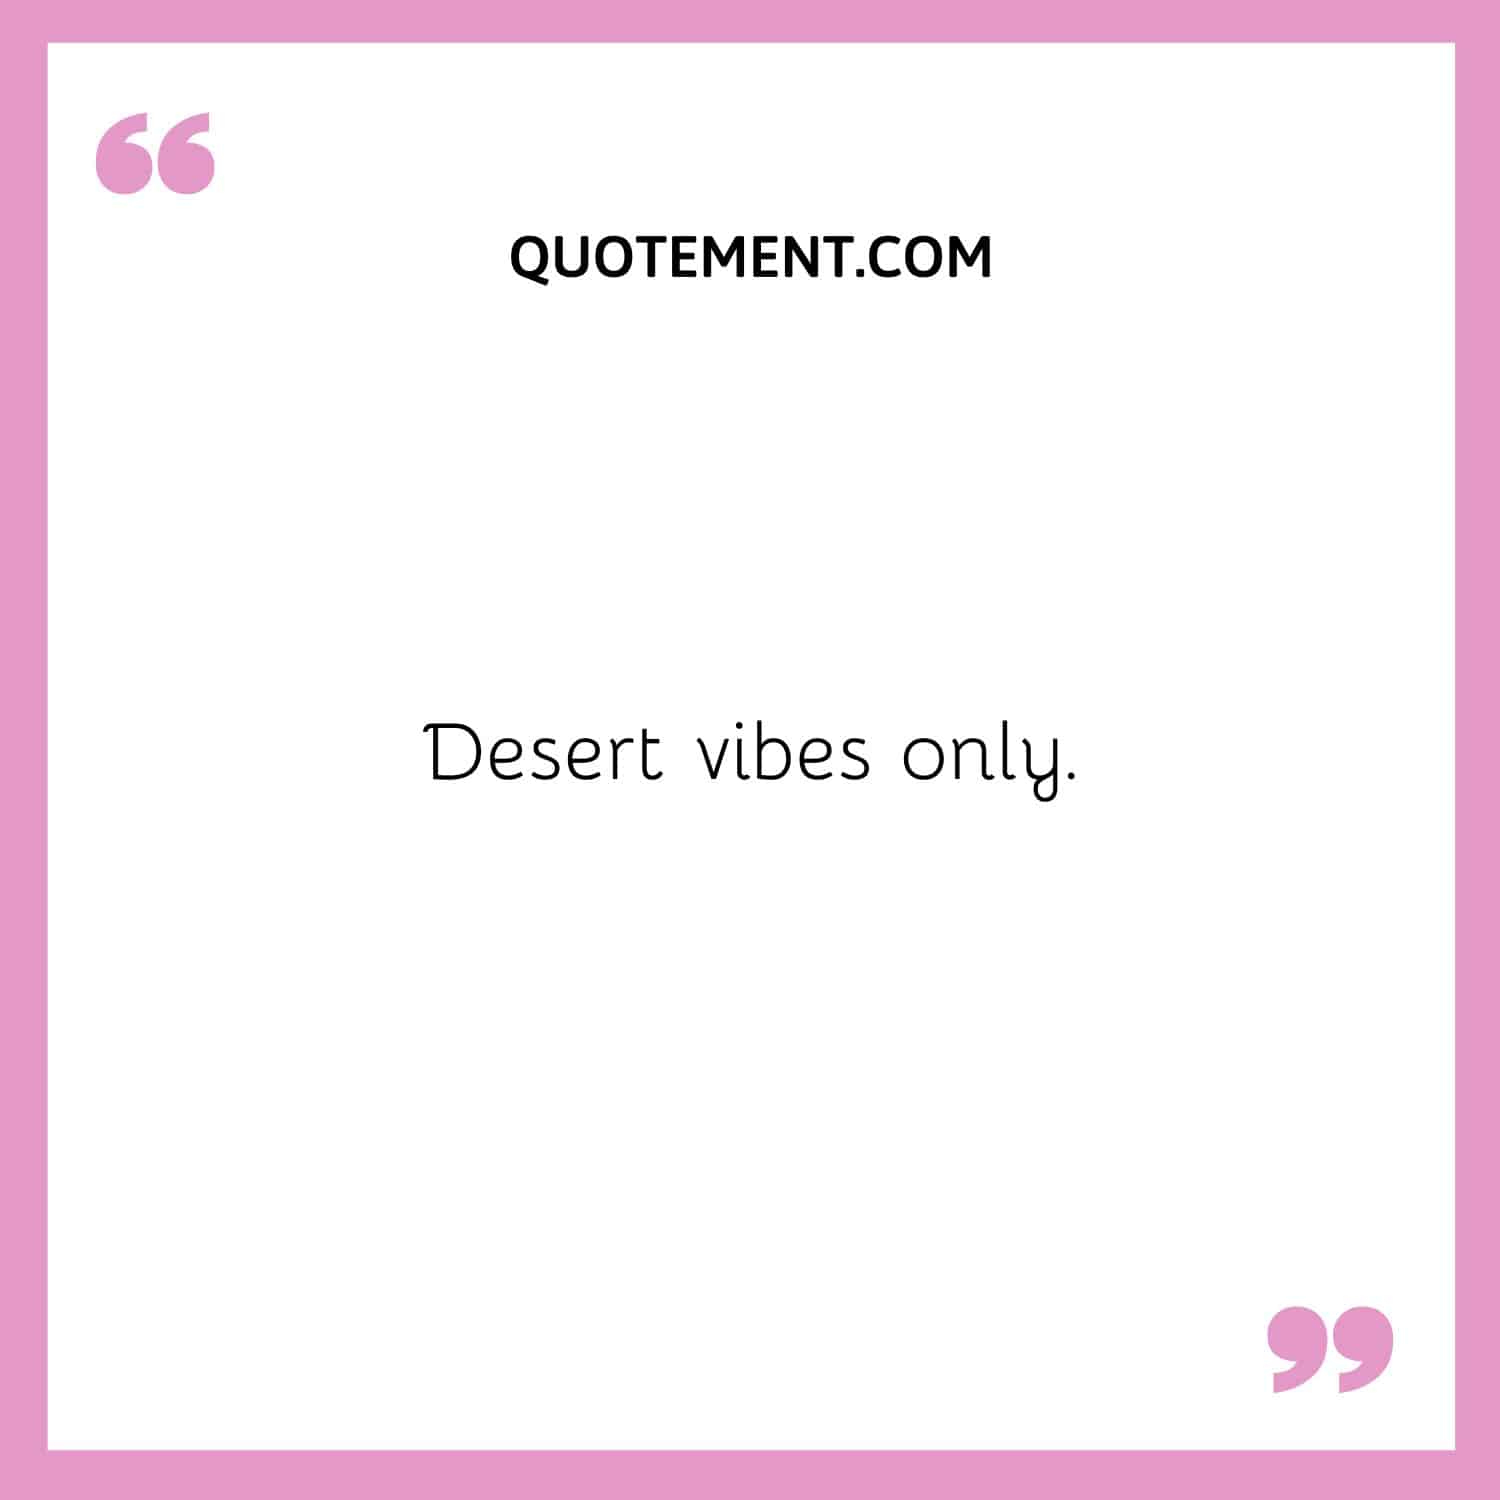 Desert vibes only.